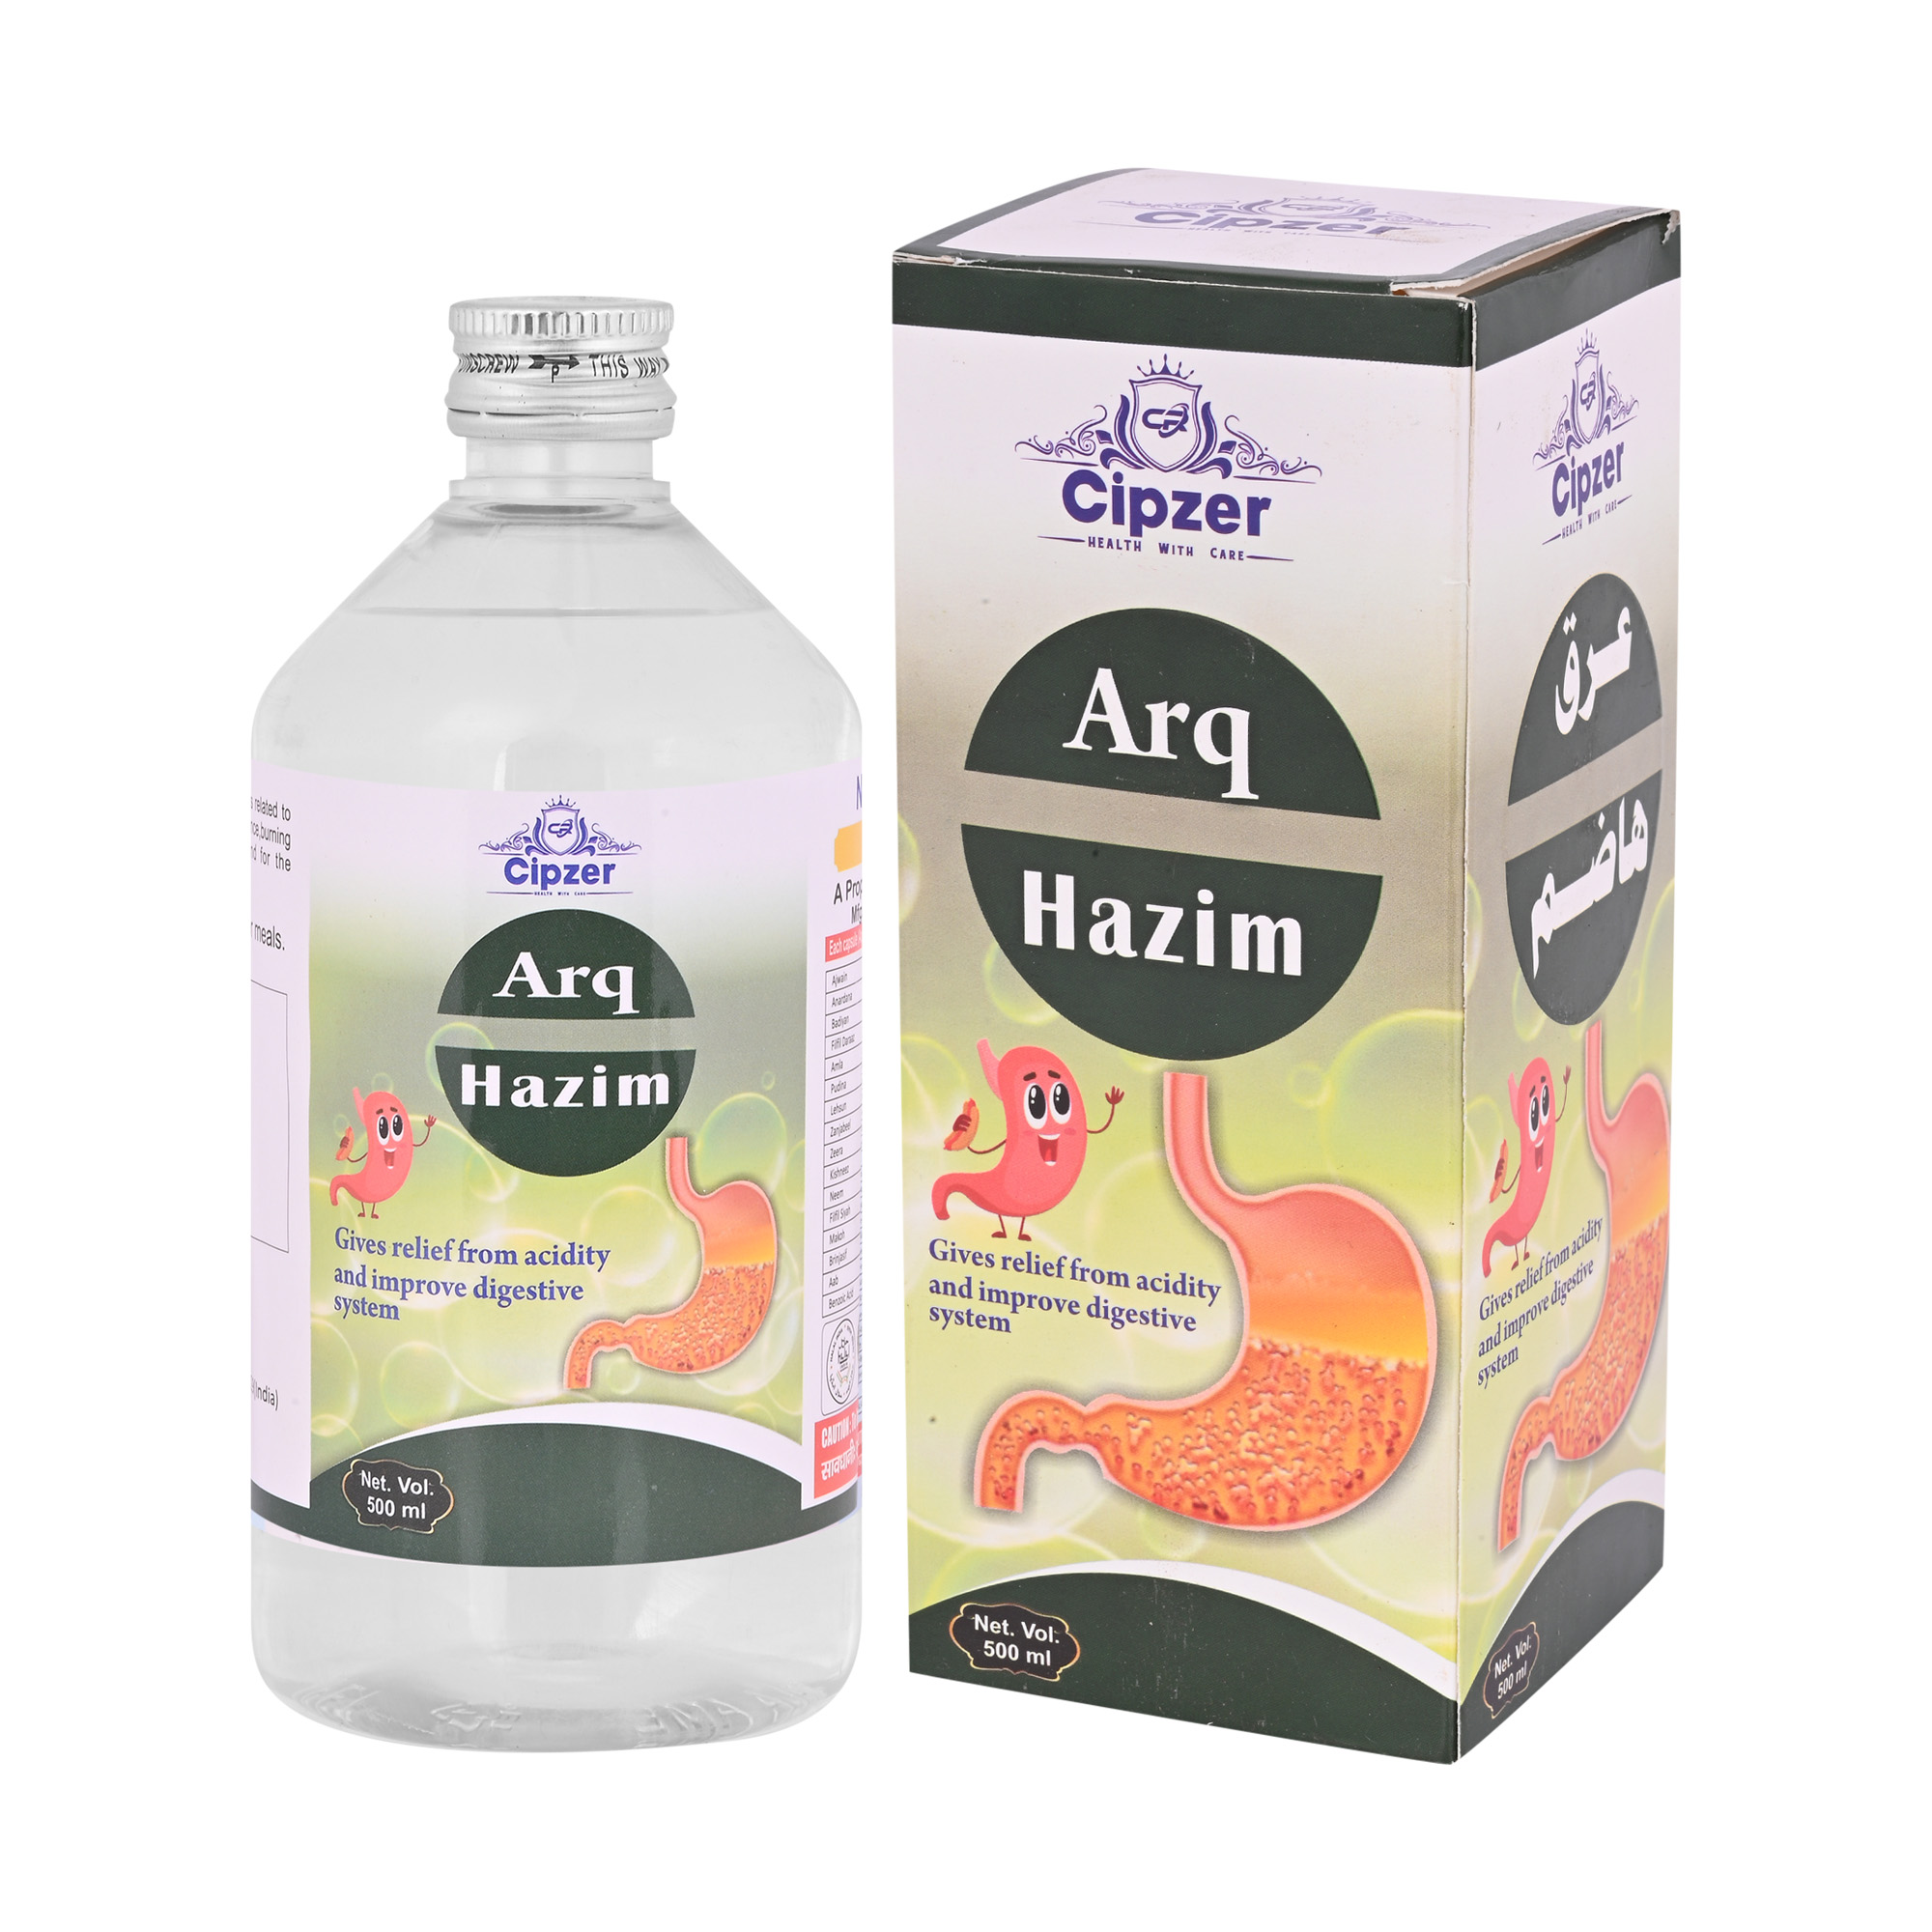 Buy Cipzer Arq Hazim at Best Price Online